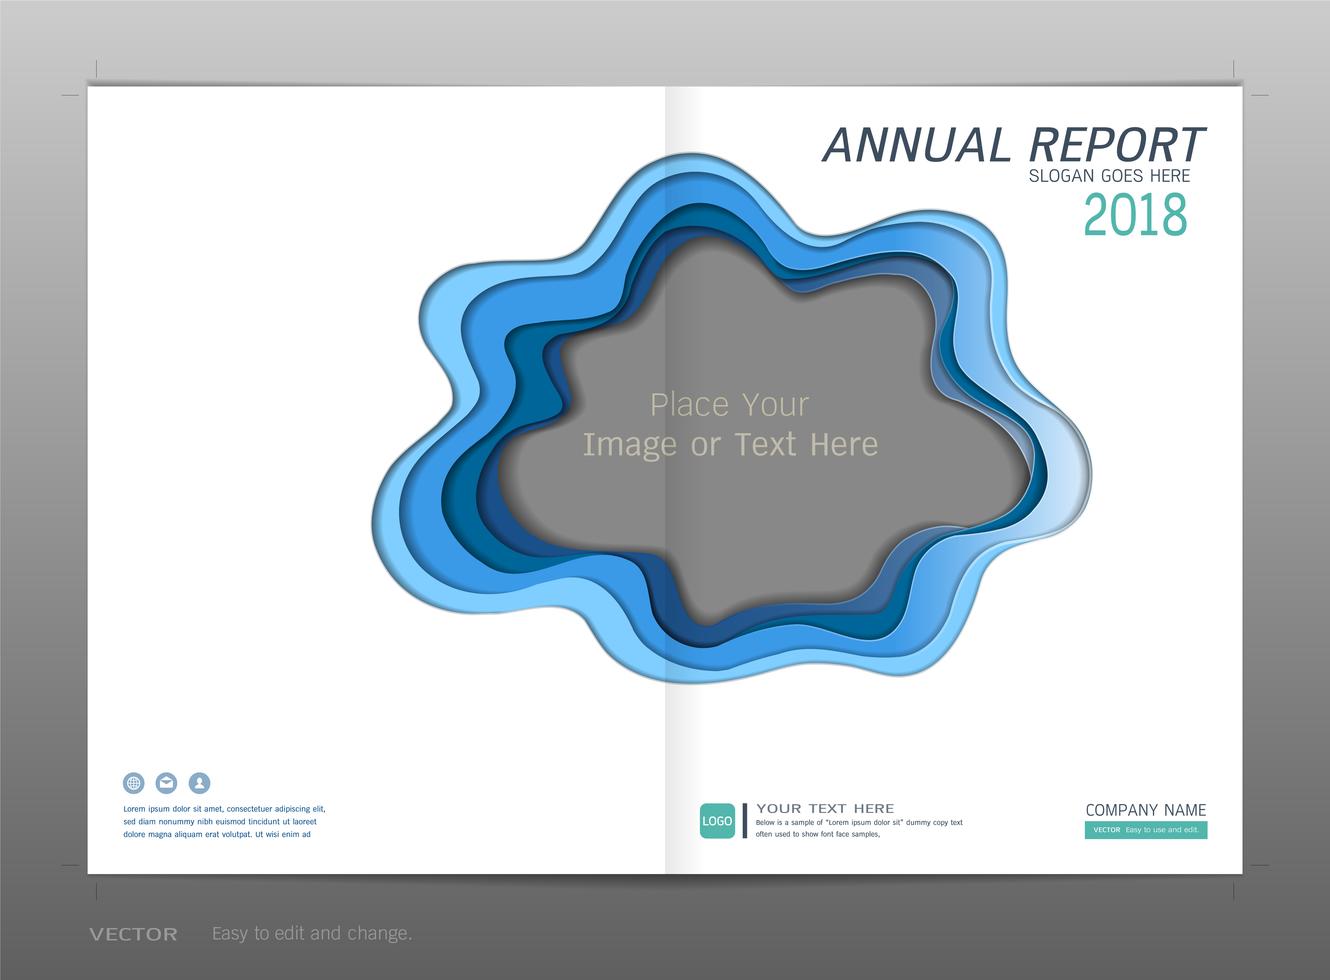 Relatório anual de design de capa, espaço em branco para a sua imagem. vetor